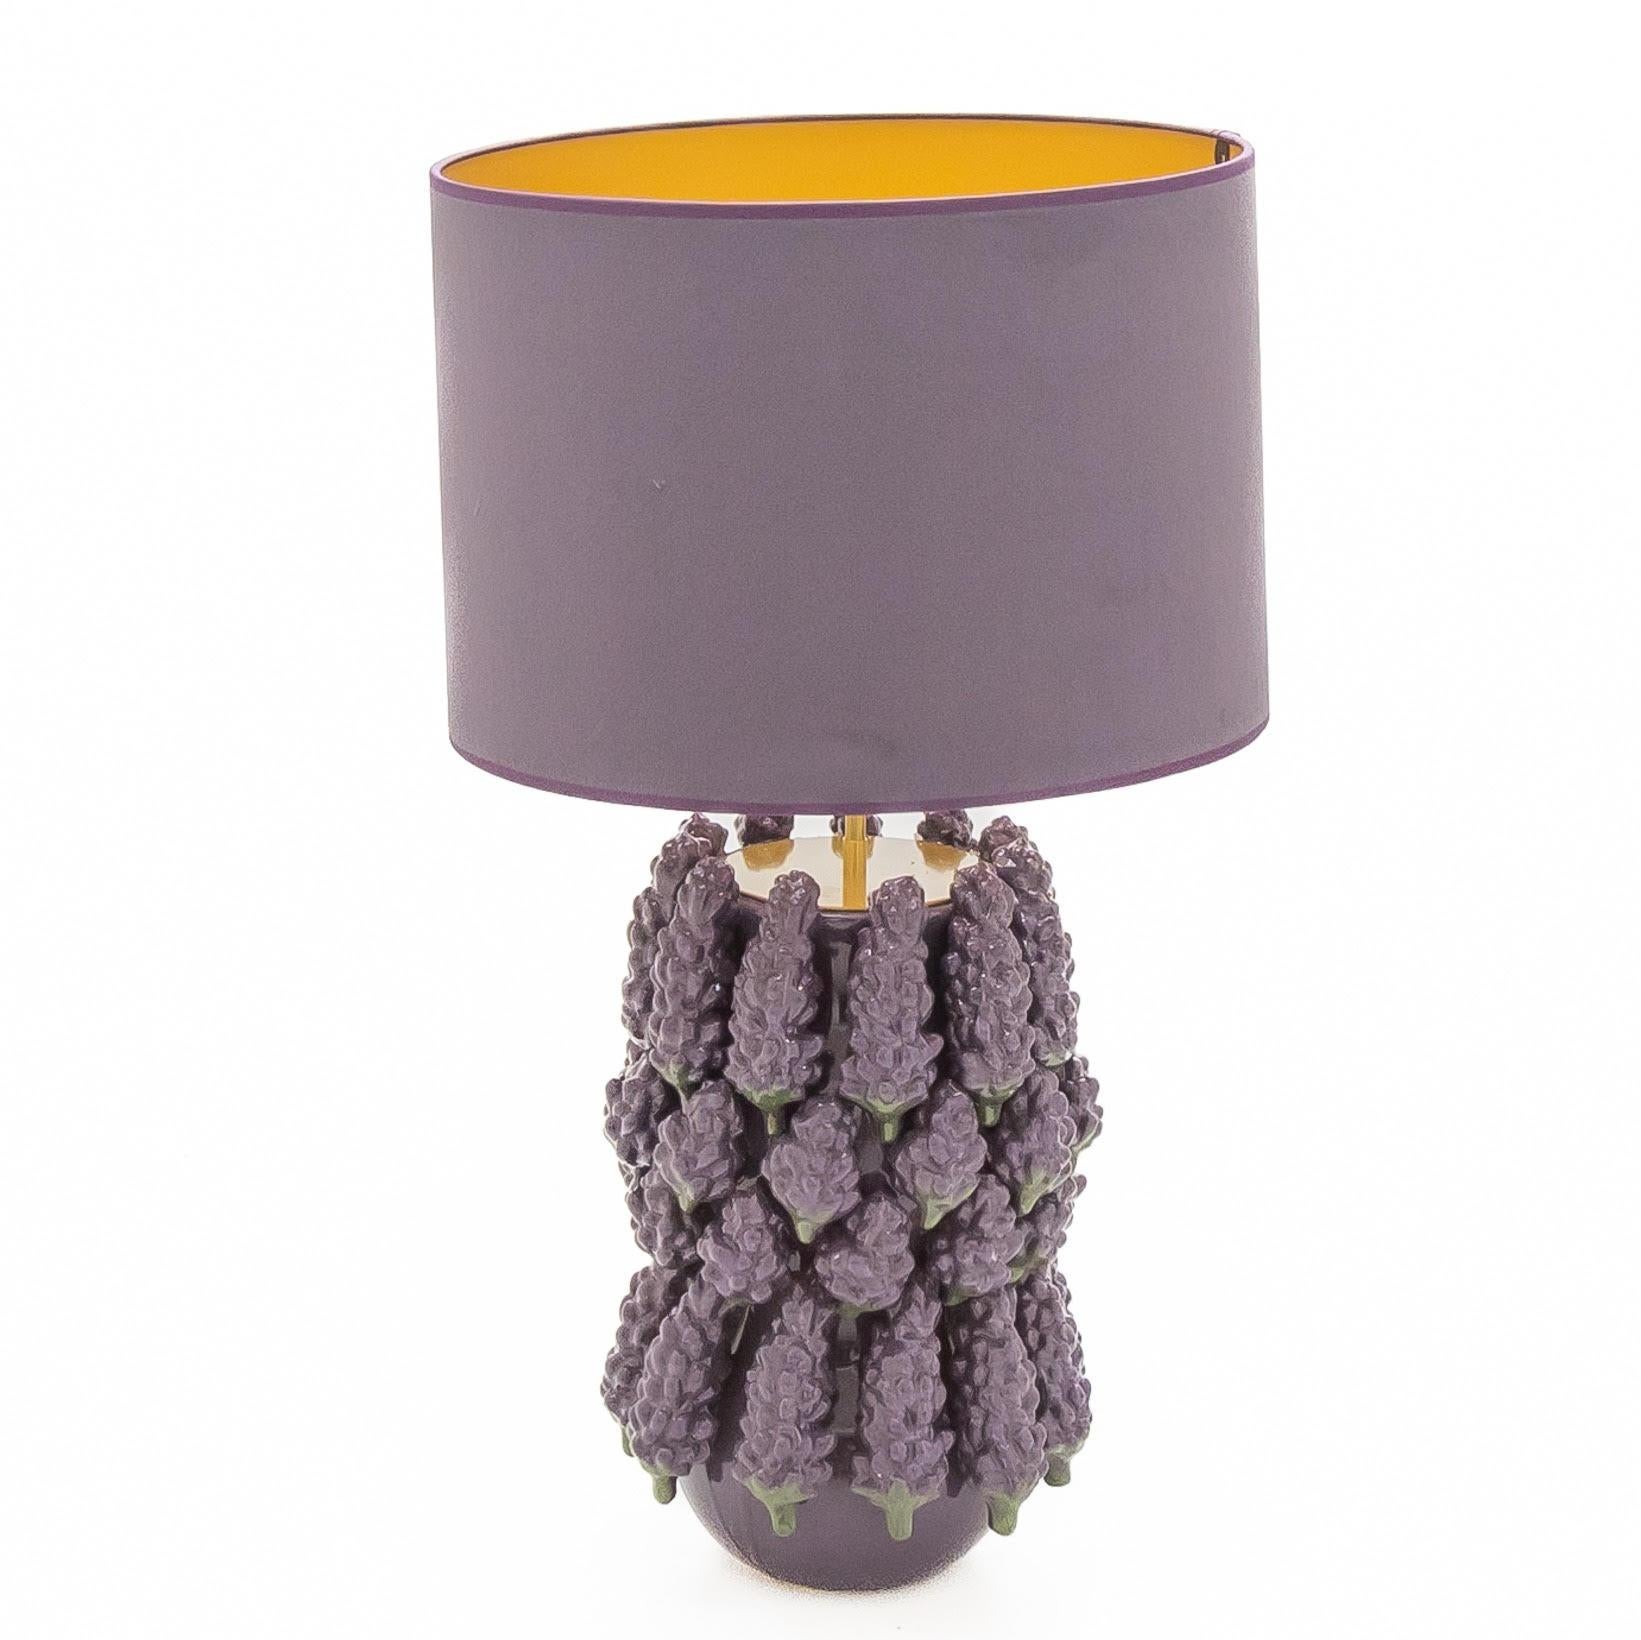 Paar Lavendel-Keramik-Tischlampen
Original Paar Keramik-Tischlampen in Form von Lavendel, handgefertigt. Inklusive passendem lila Samtschirm.
Abmessungen - H: 71 cm, T: 35 cm
Produktionszeit 1-3 Wochen